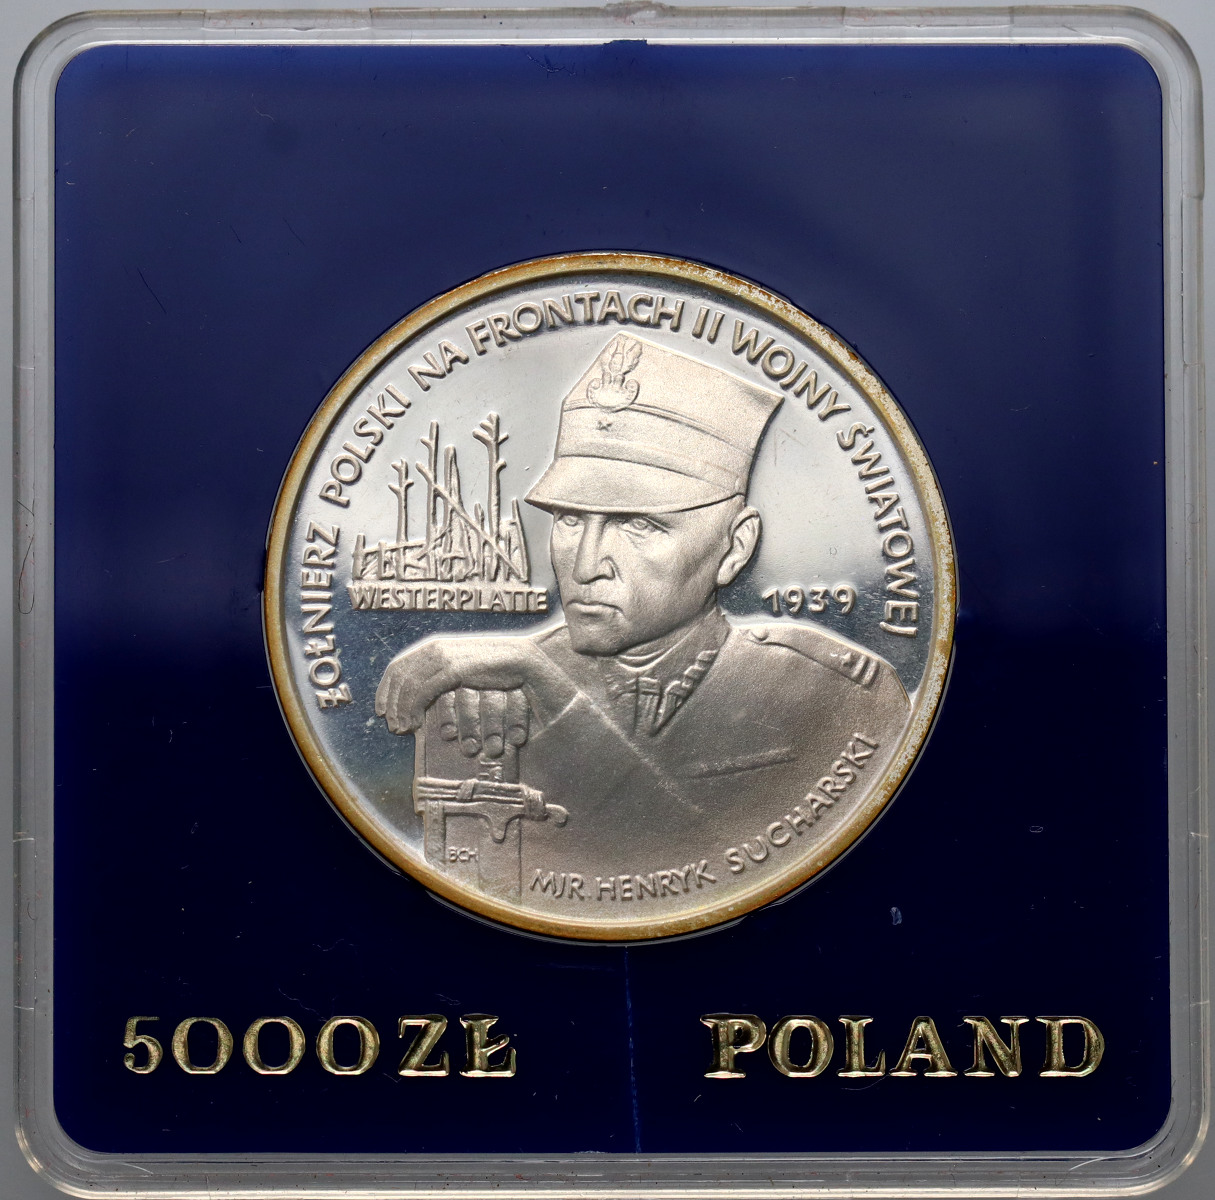 41. Polska, PRL, 5000 złotych 1989, Westerplatte